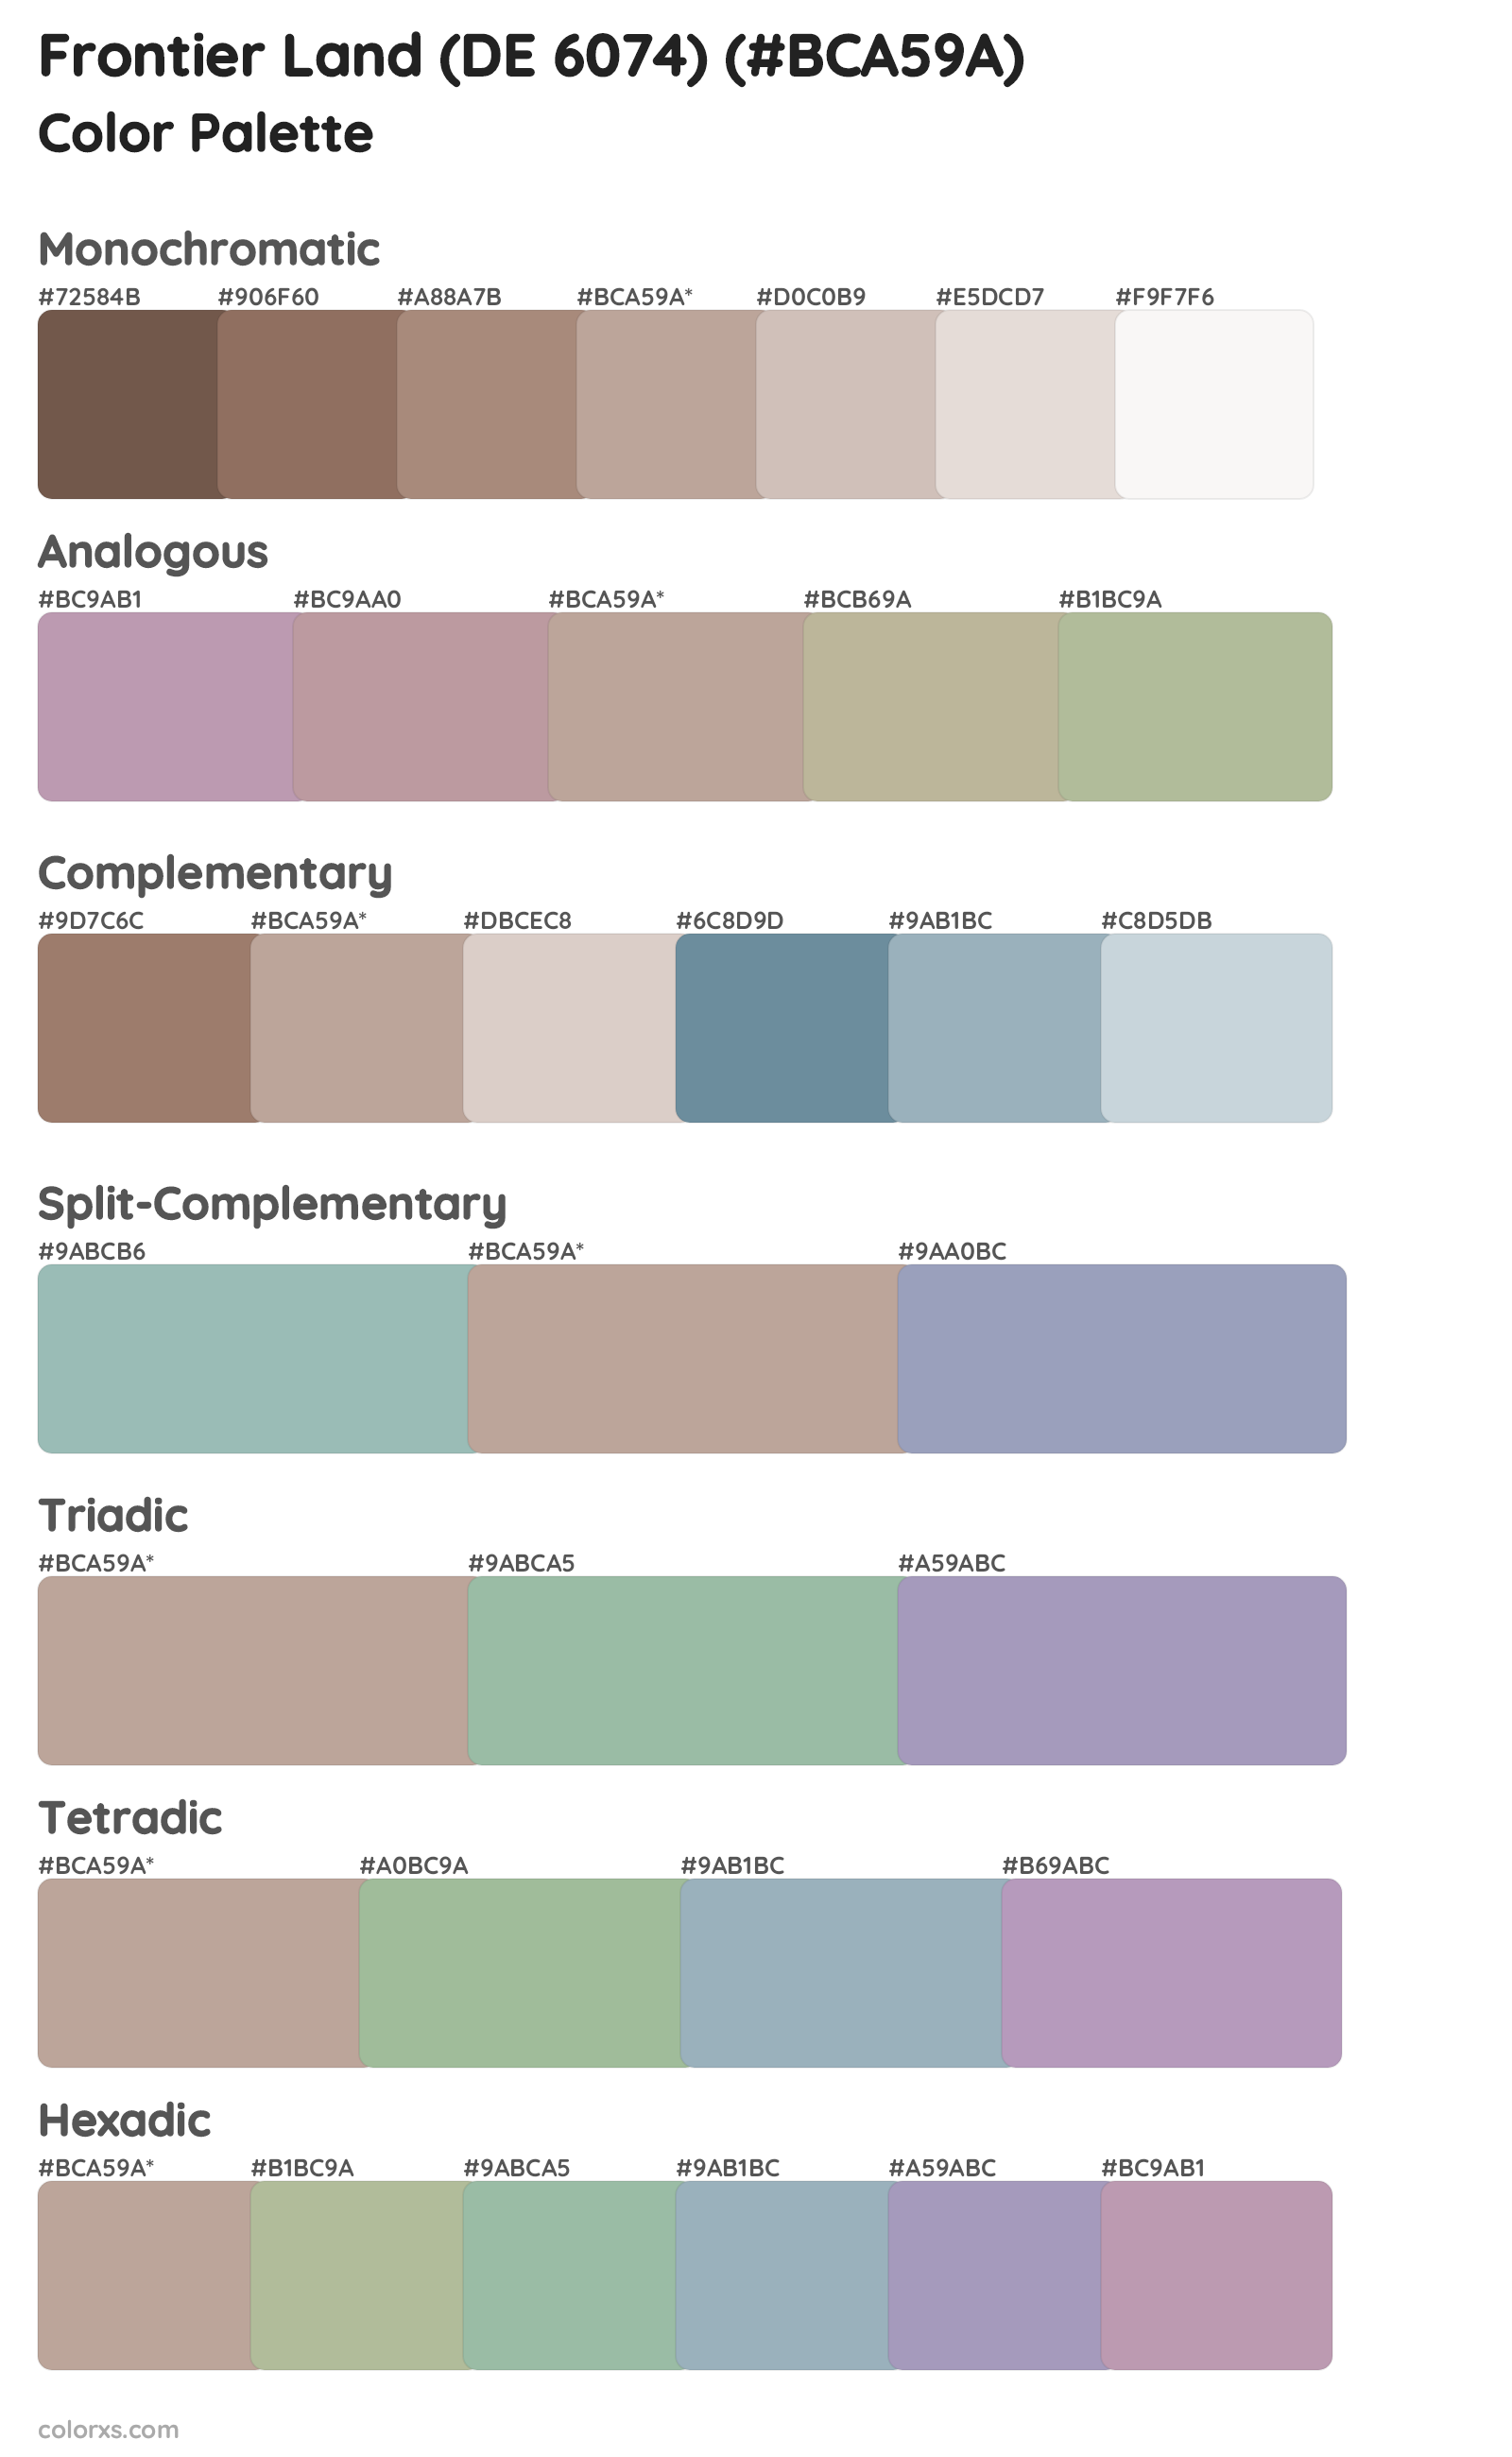 Frontier Land (DE 6074) Color Scheme Palettes